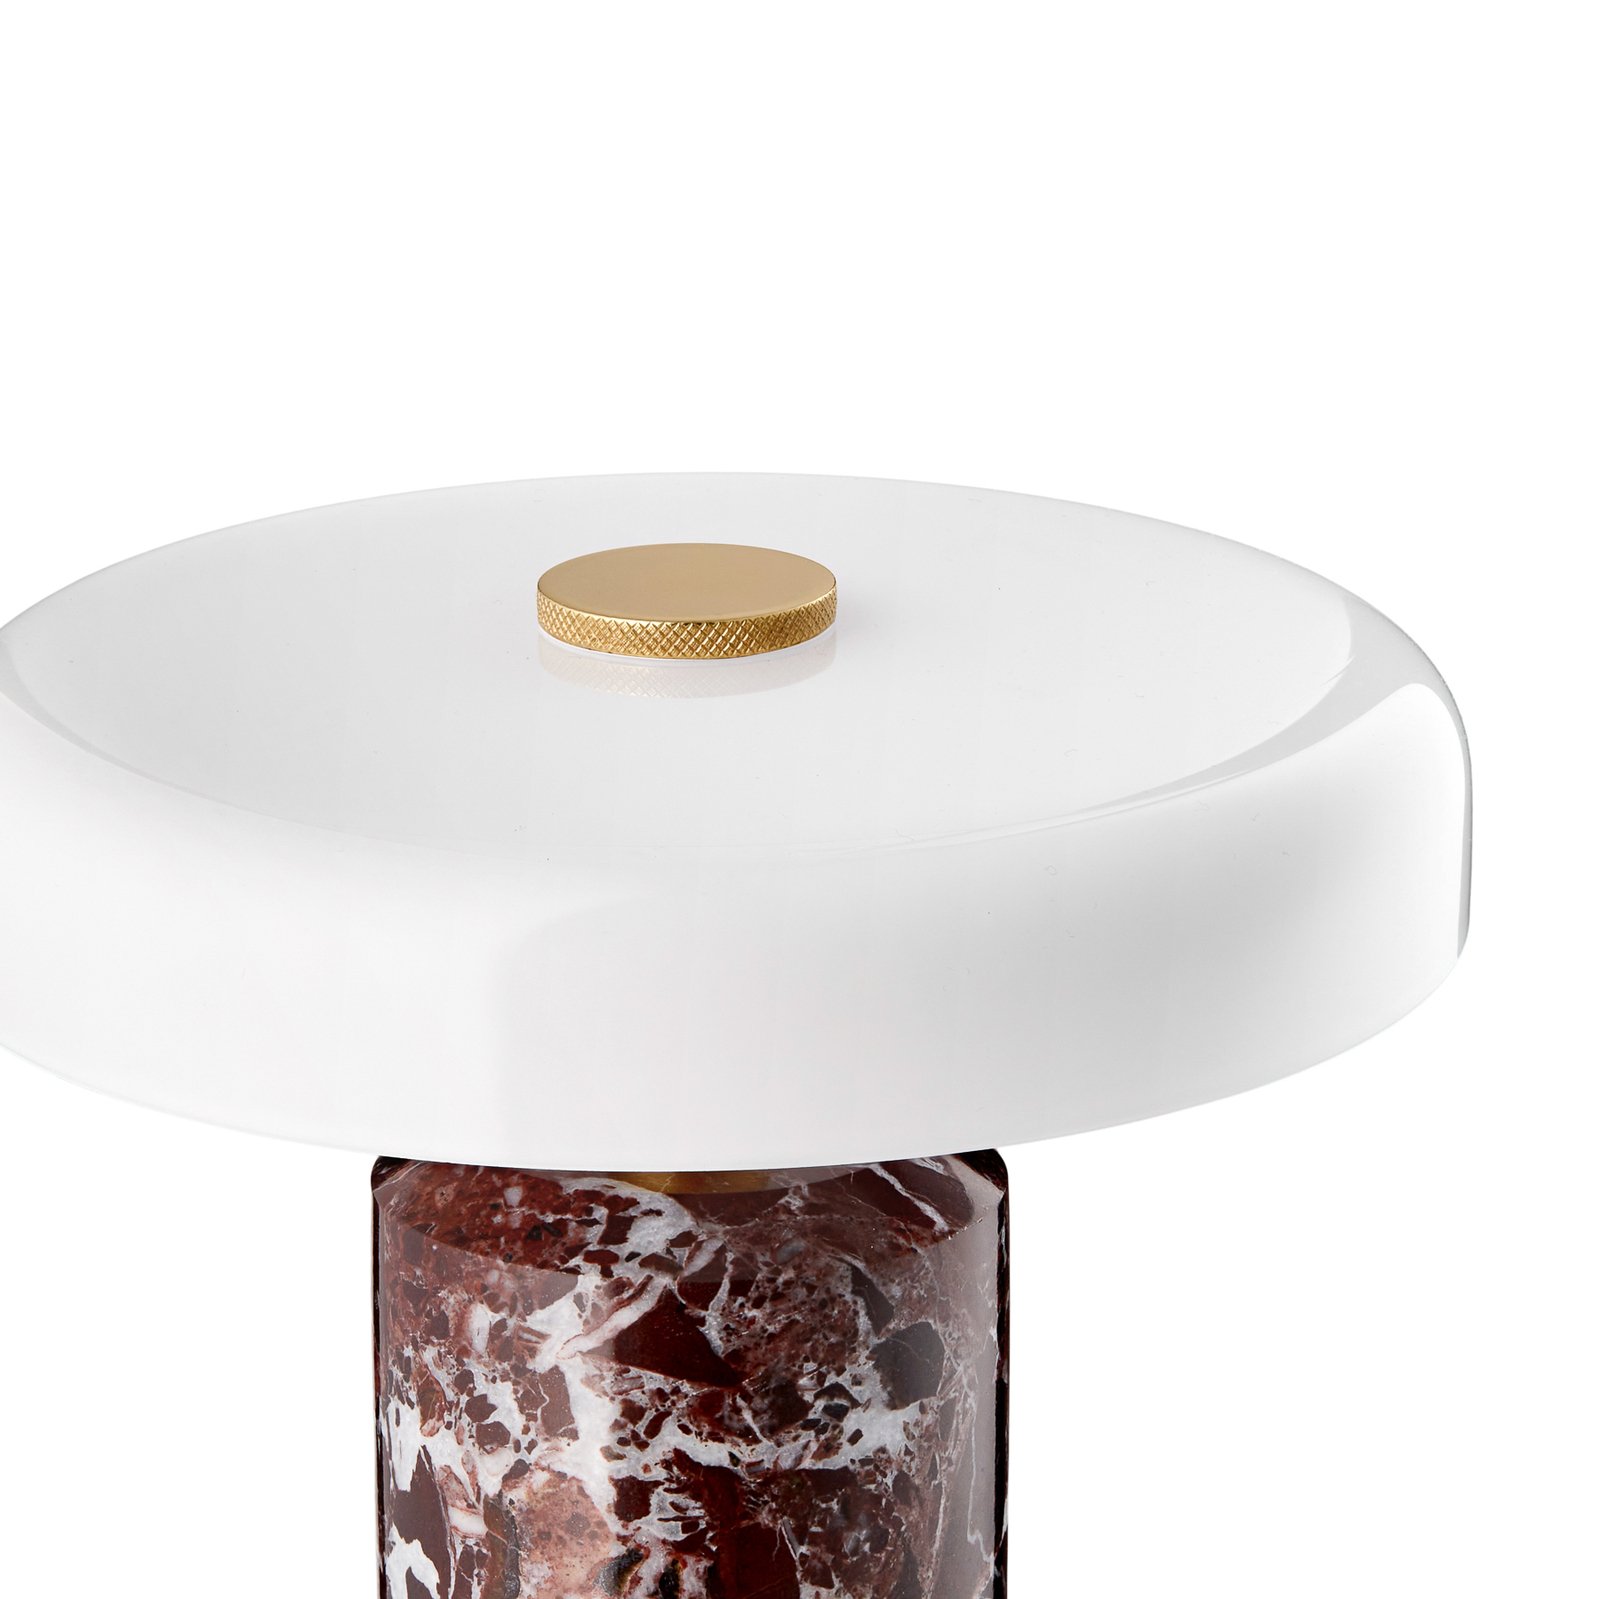 Trip LED újratölthető asztali lámpa, piros / fehér, márvány, üveg, IP44